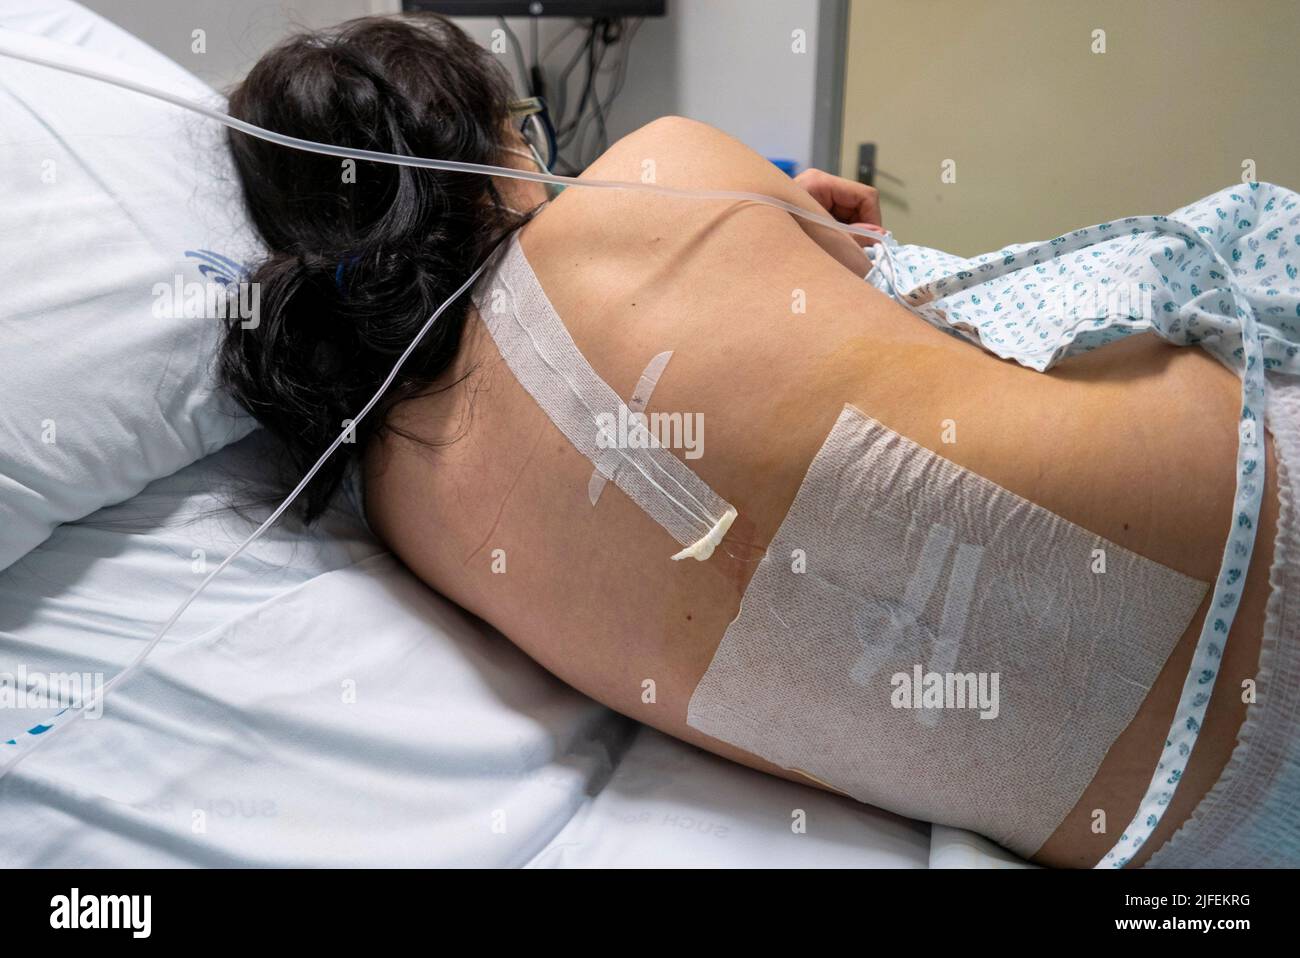 Mujer embarazada con catéter epidural lumbar resultante de la administración epidural en preparación para el trabajo de parto Foto de stock